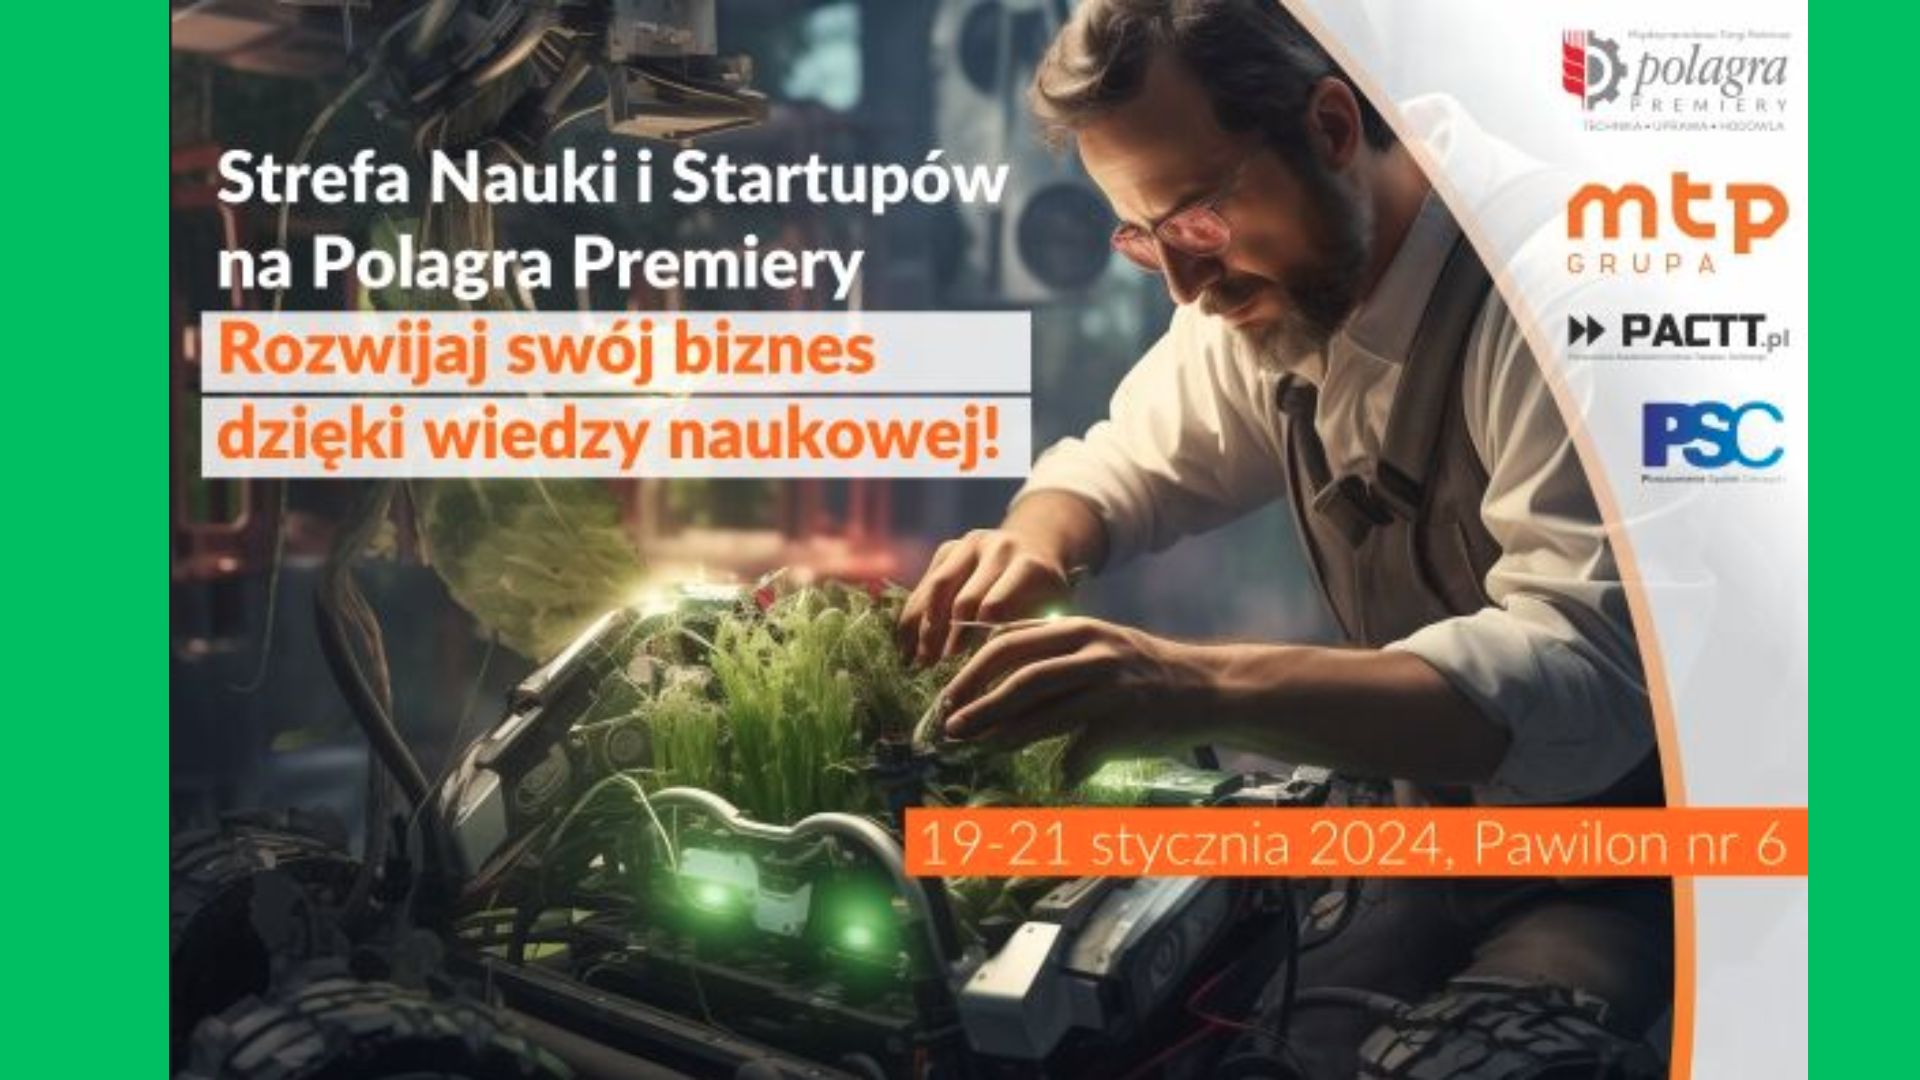 CTT UG Strefa Nauki i Startupów Targi Polagra 2024